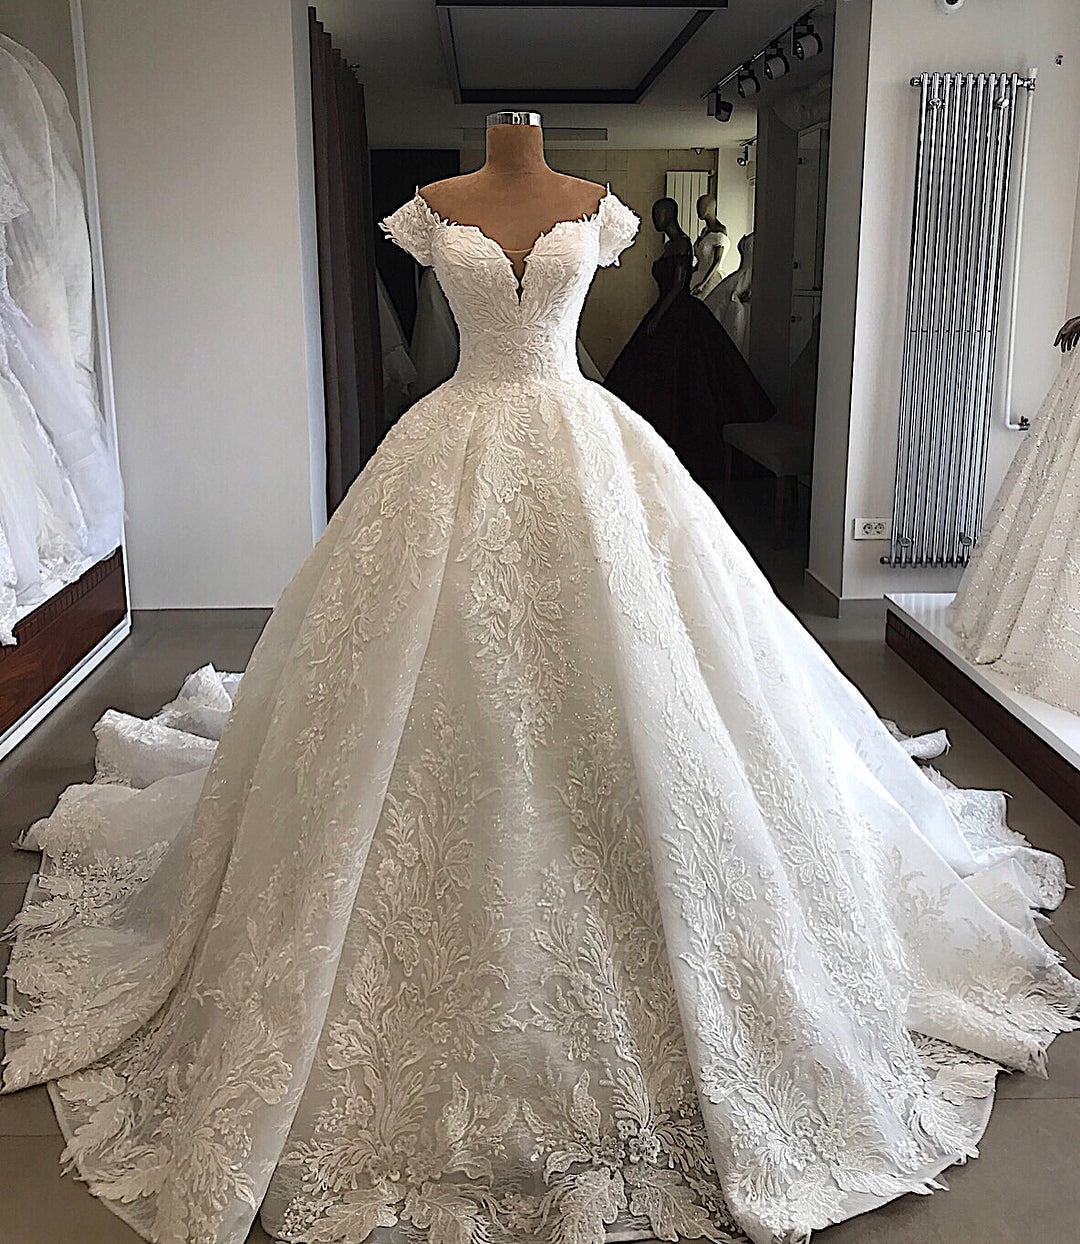 Bestellen Sie Elegante Hochzeitskleider Mit Spitze online bei babyonlinedress.de. Brautkleider A linie Online für mit günstigen preis bekommen.